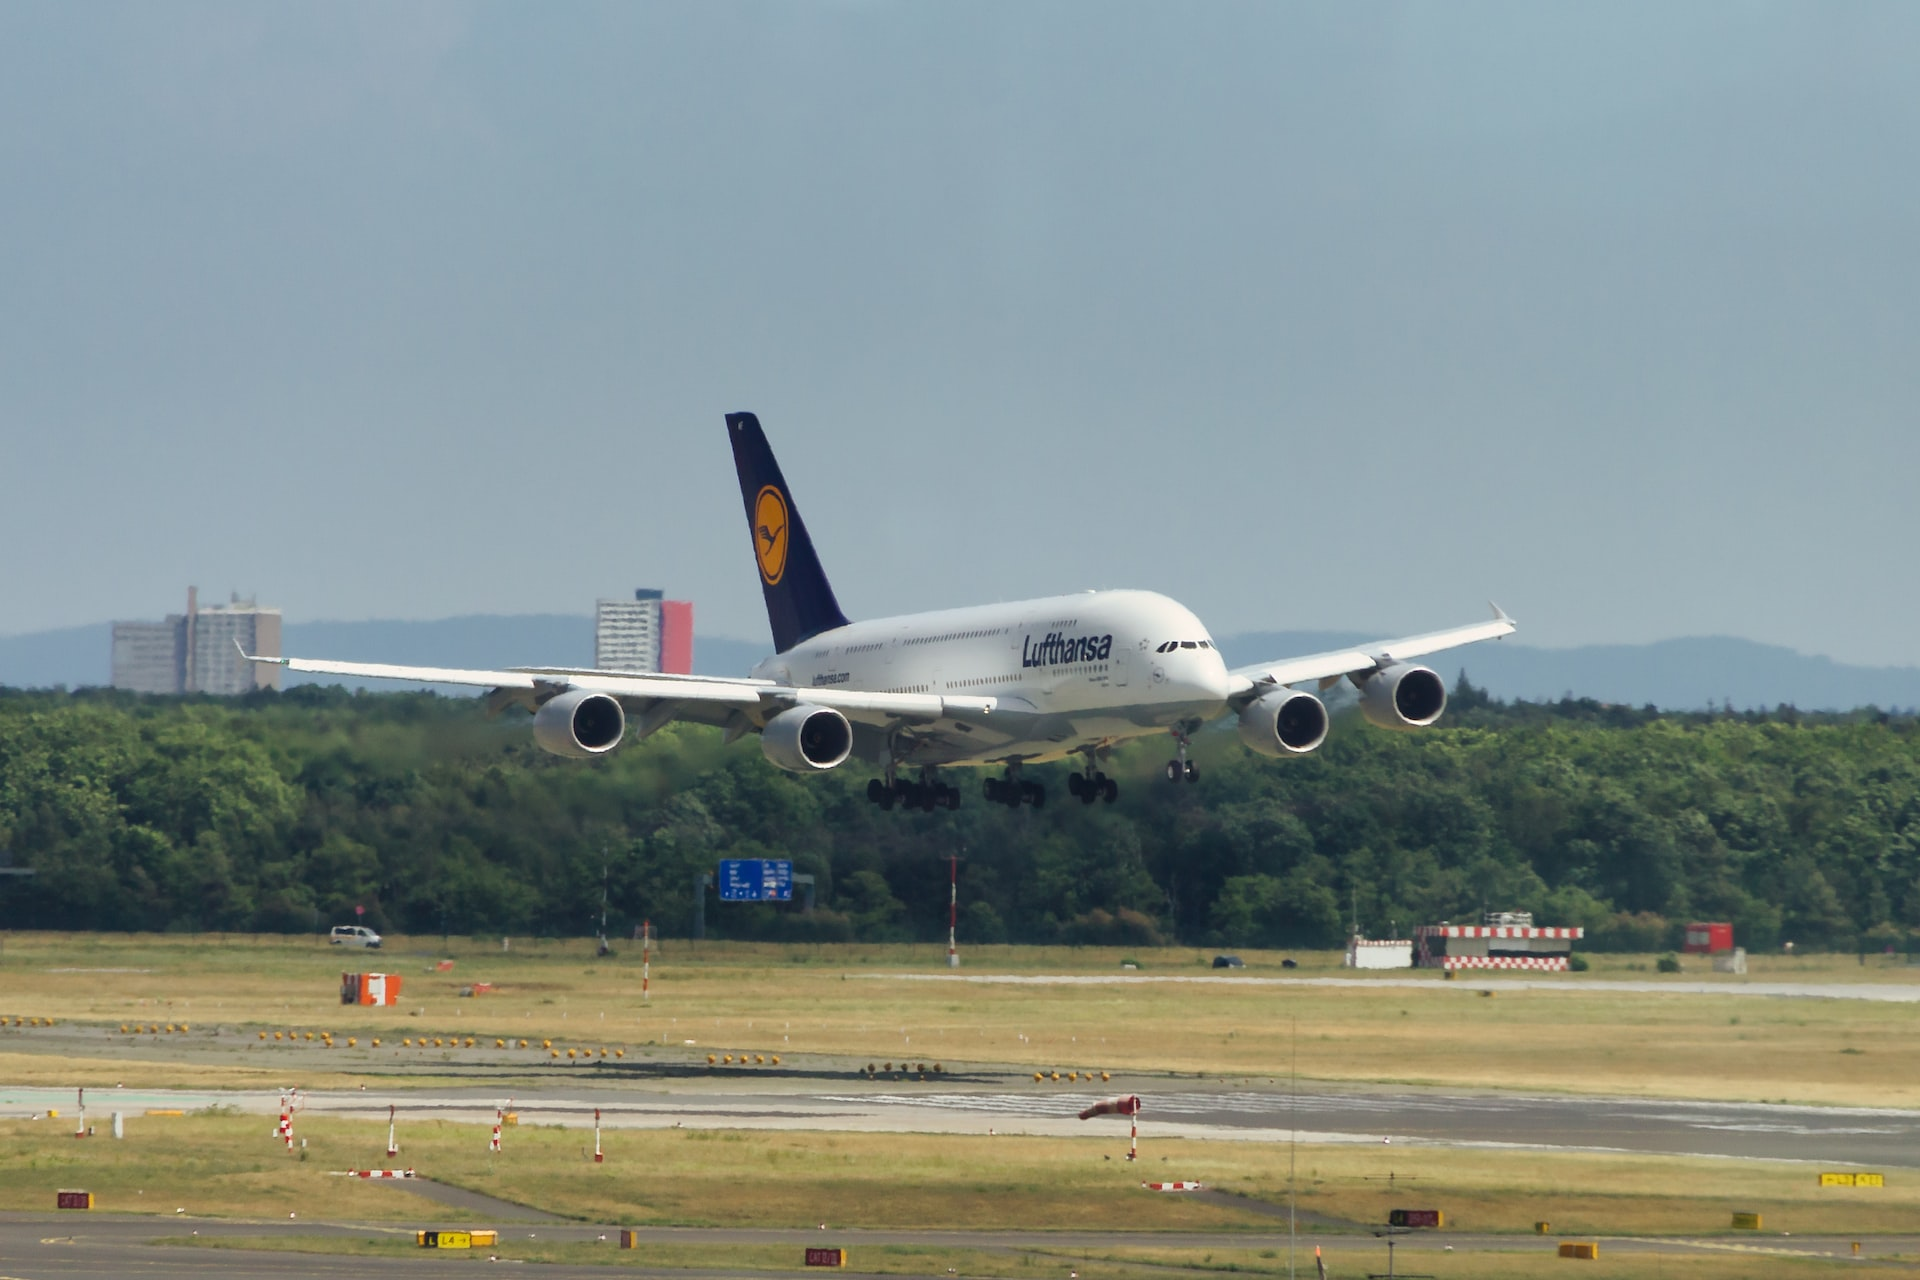 A Lufthansa aircraft landing on a runway.